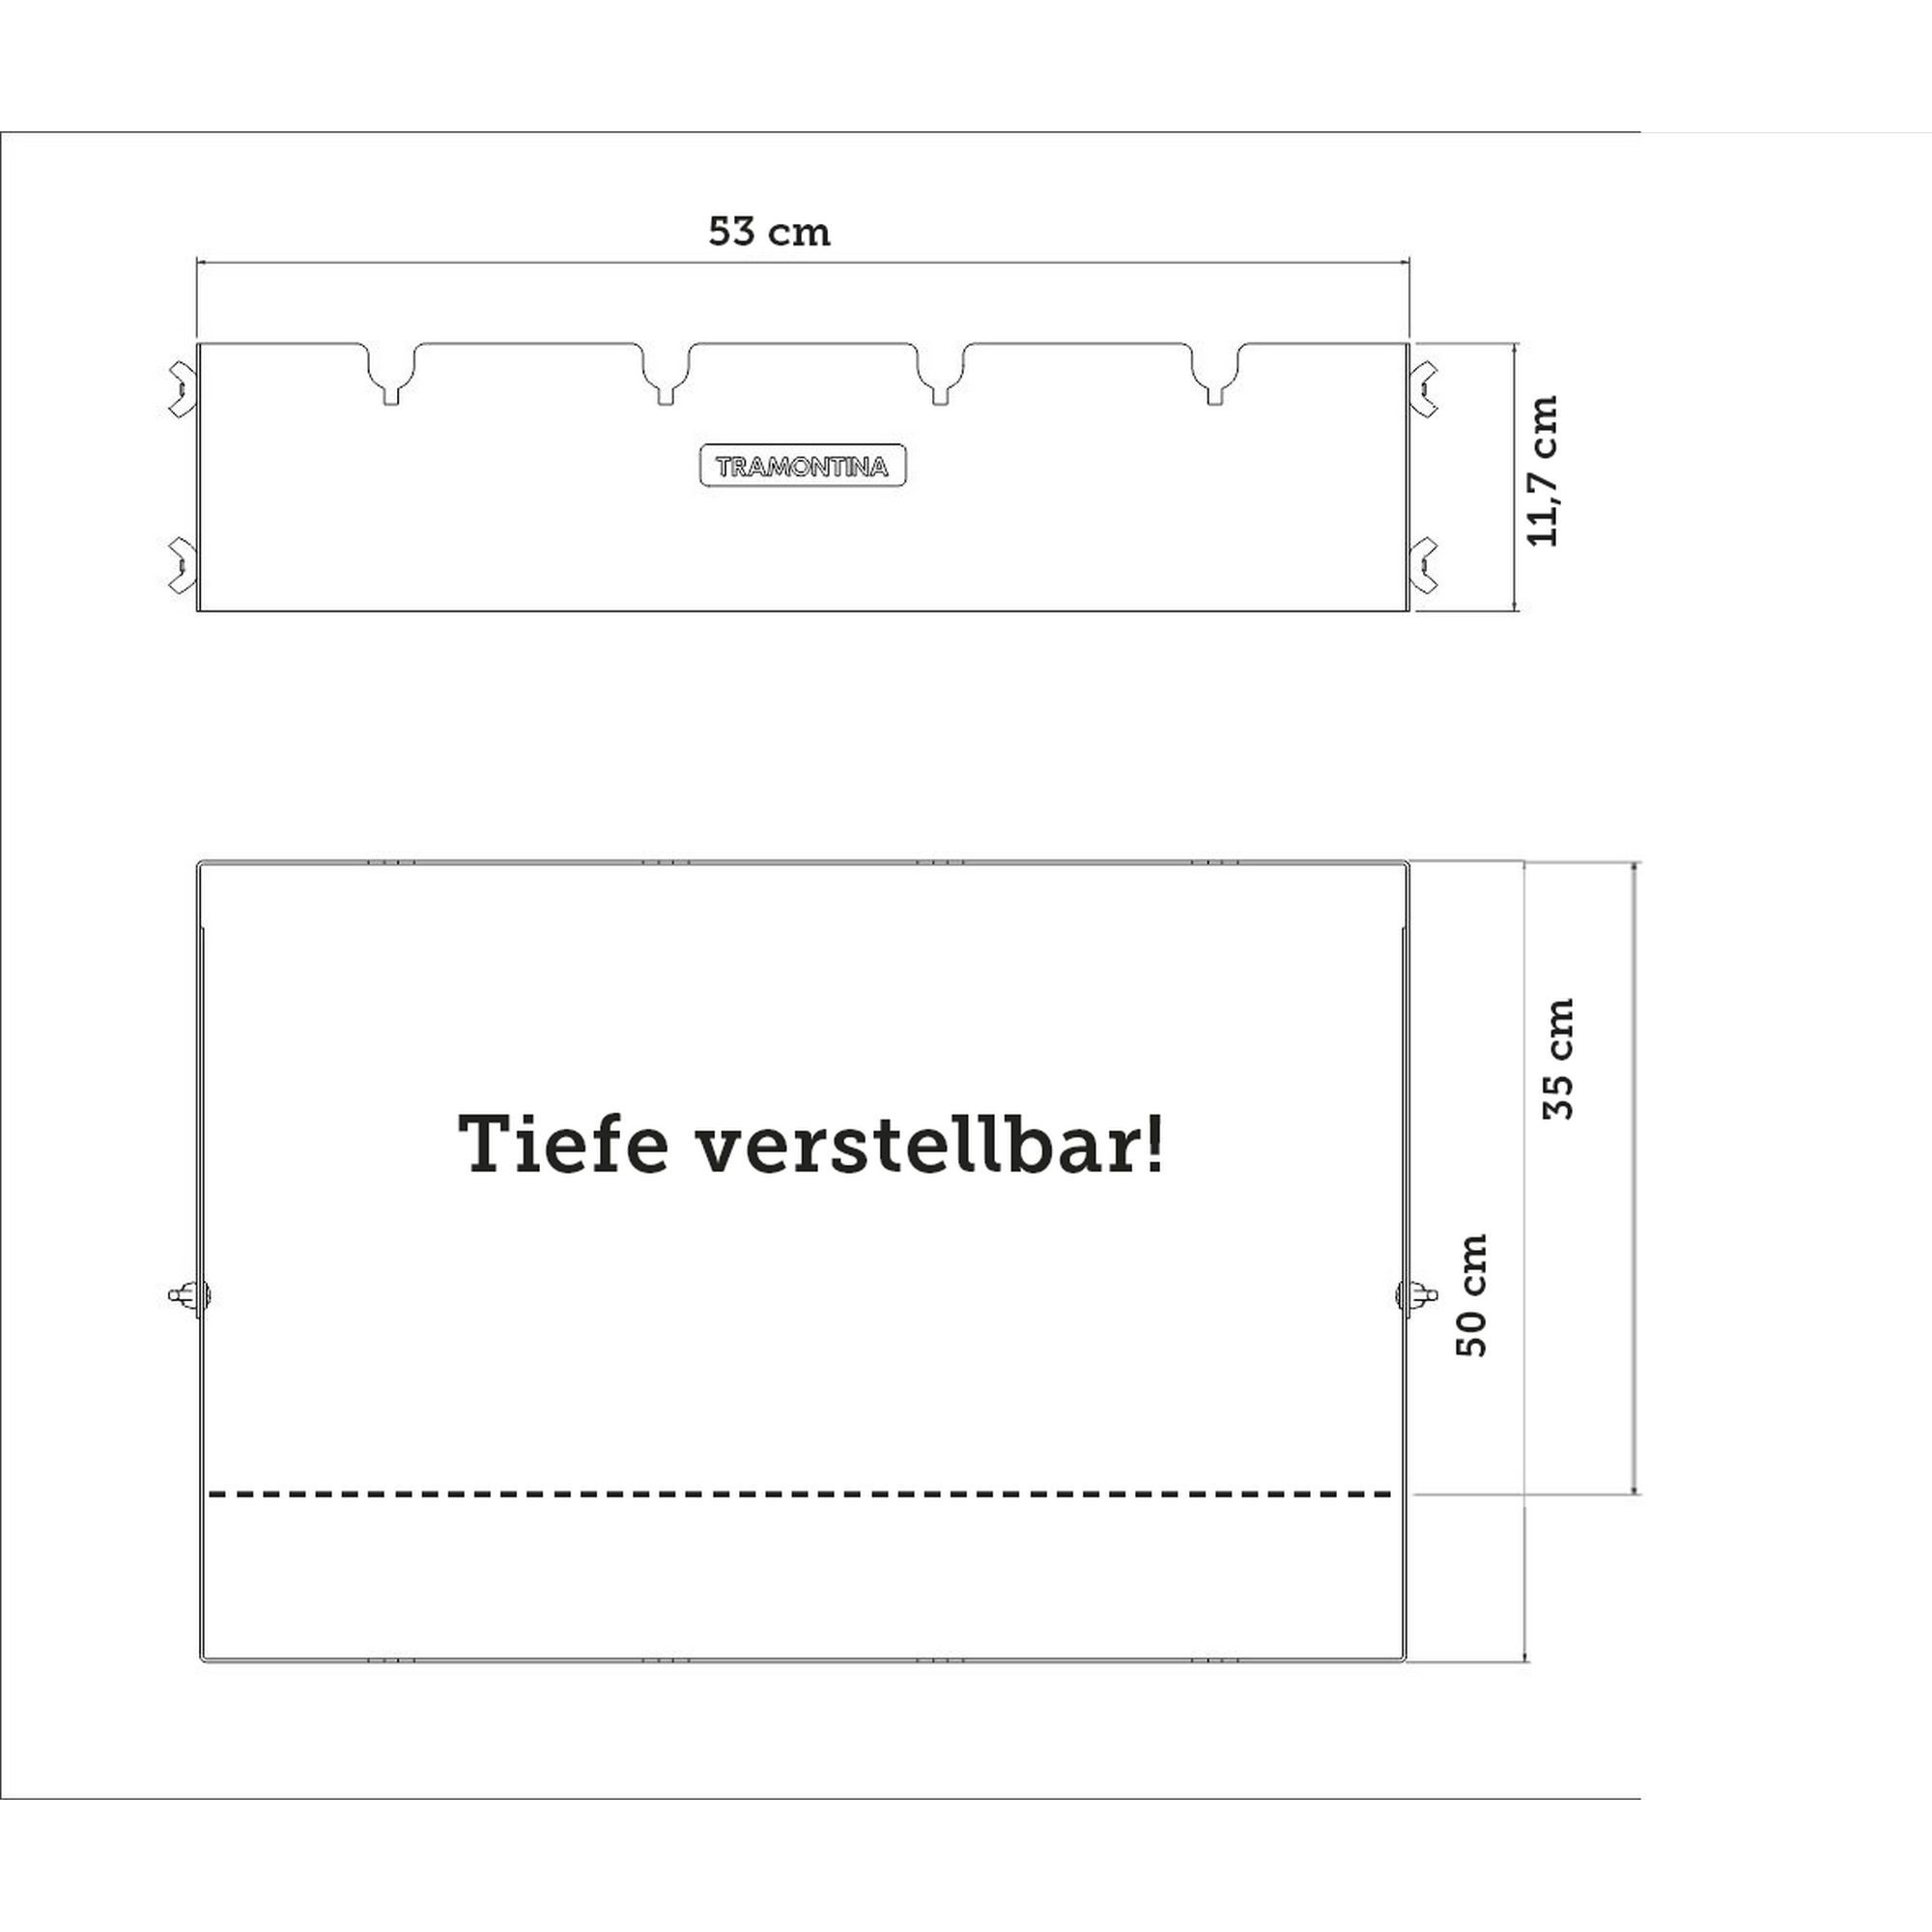 Grillaufsatz für Grillspieße, 53 x 35-50 x 11,7 cm + product picture